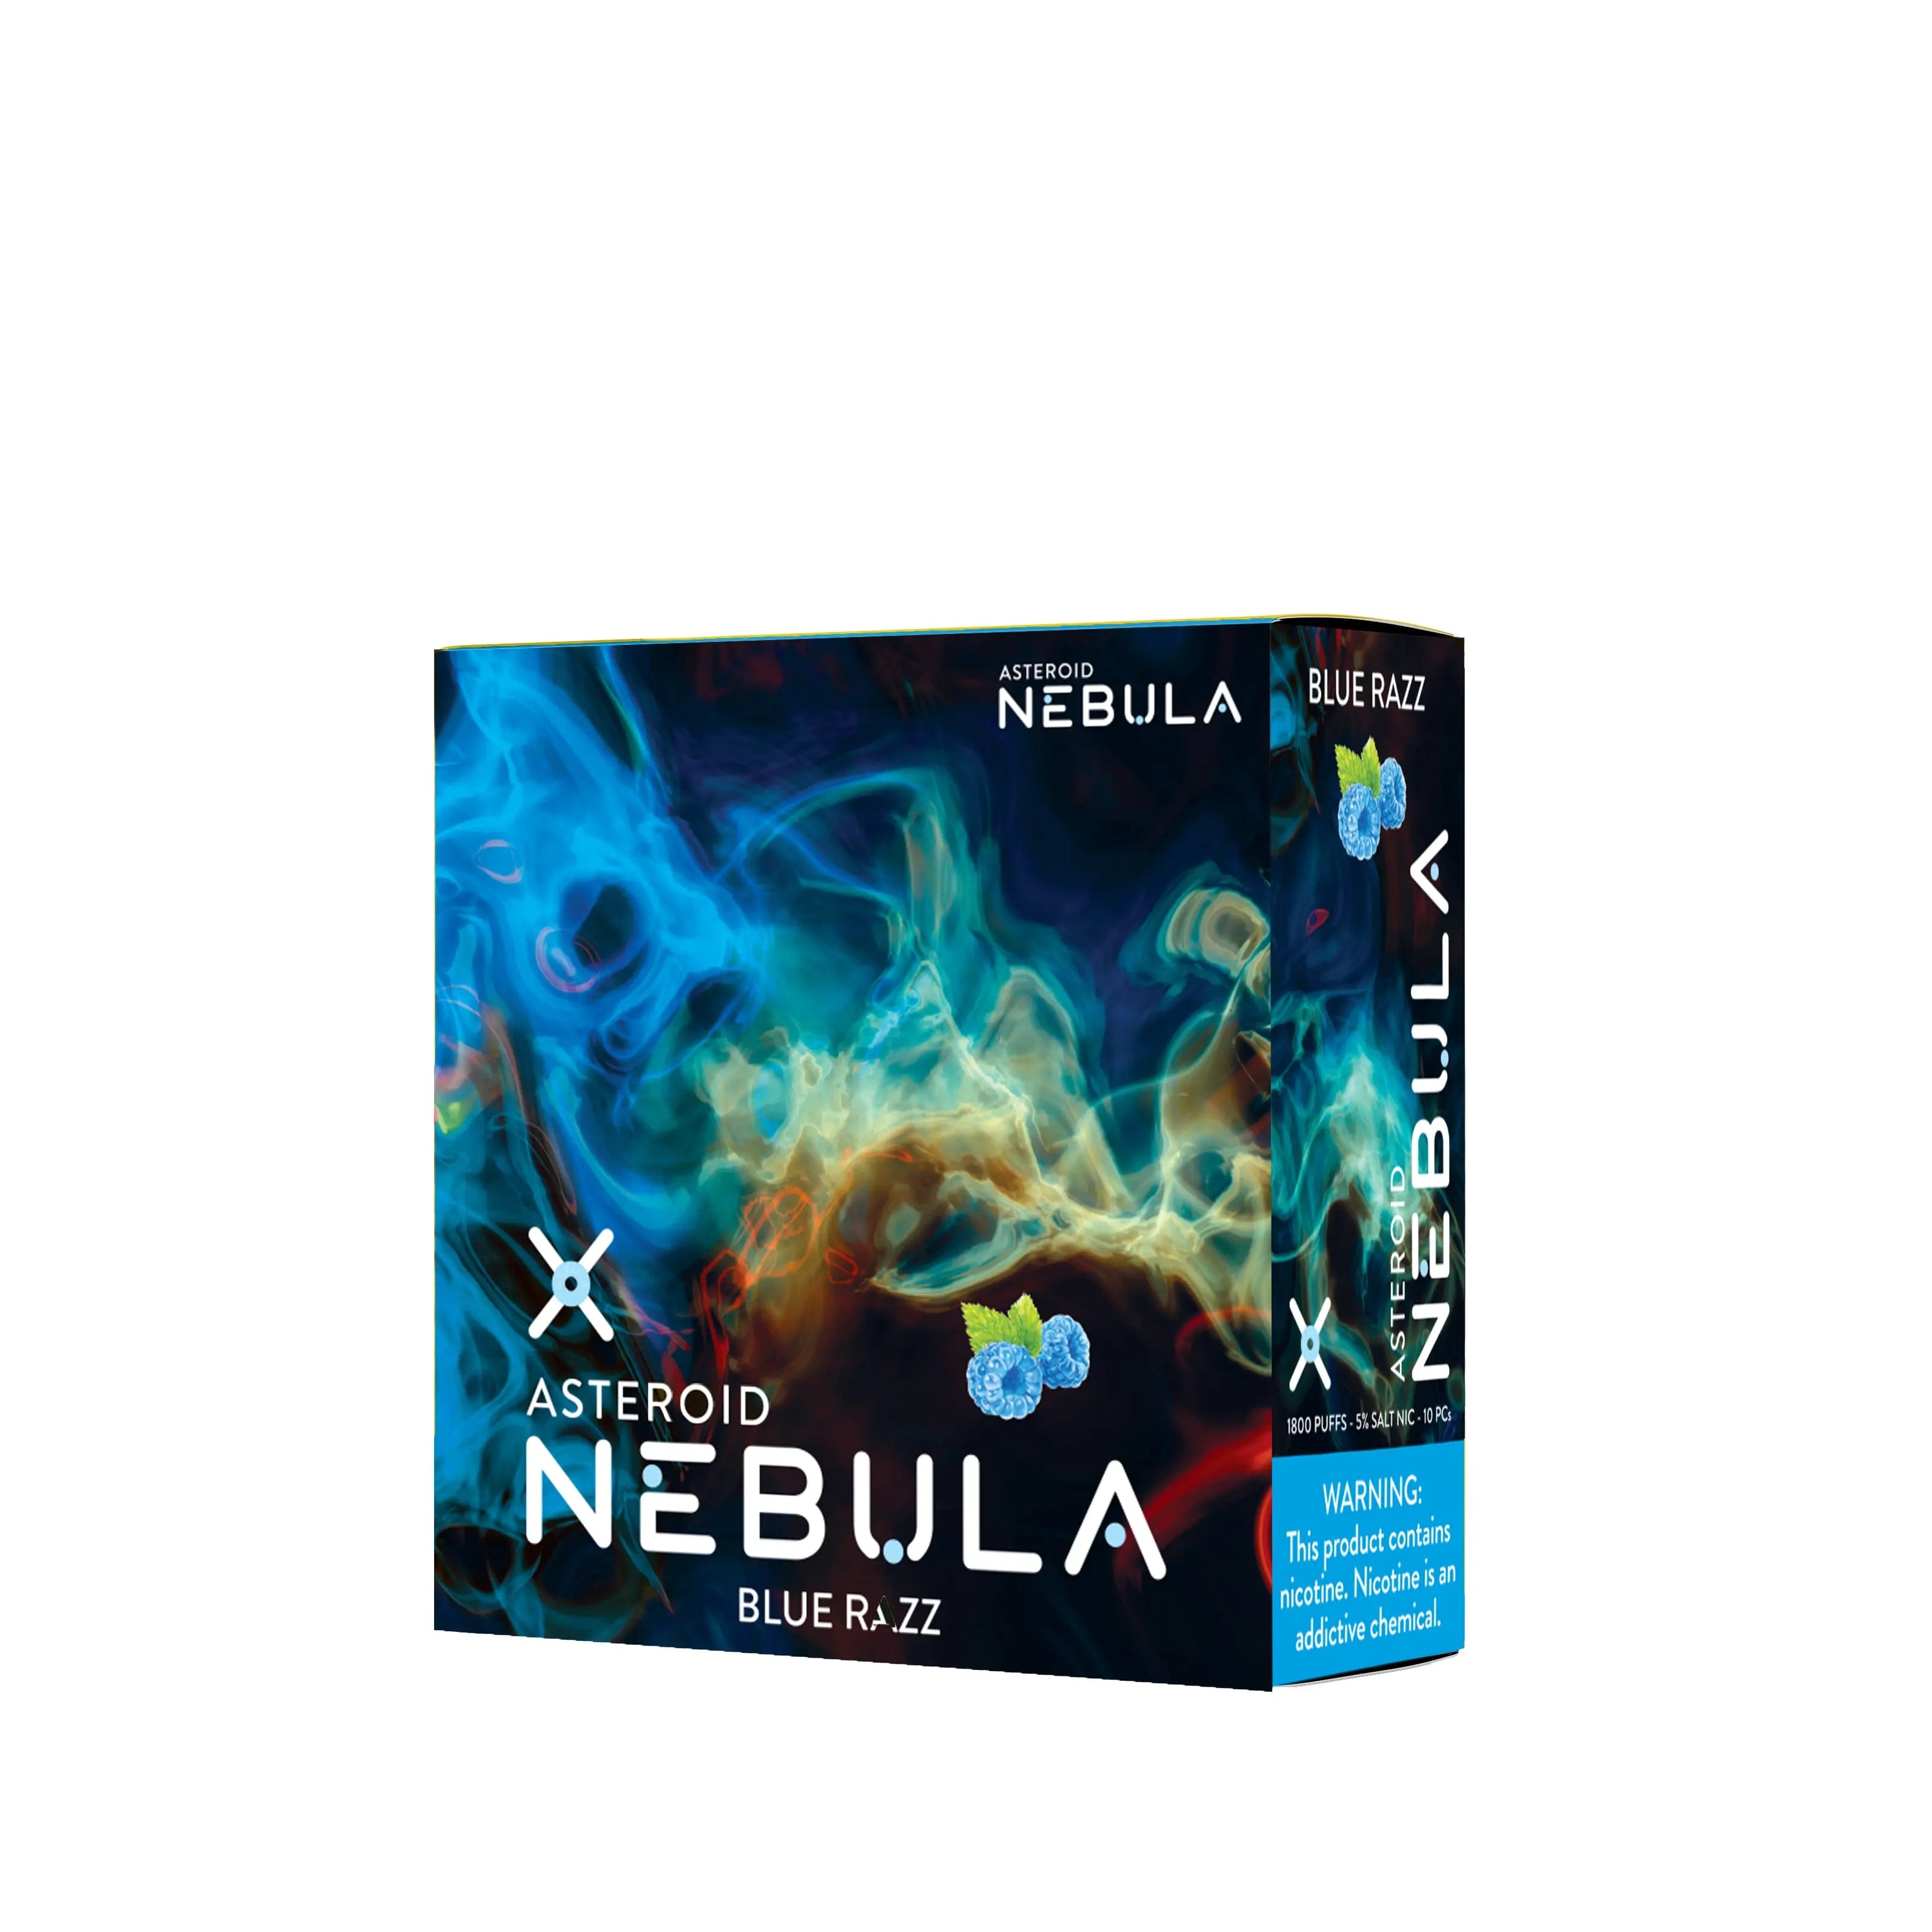 Nebula Asteroid 5% 1800 Puffs - Blue Razz - B2B Nebula